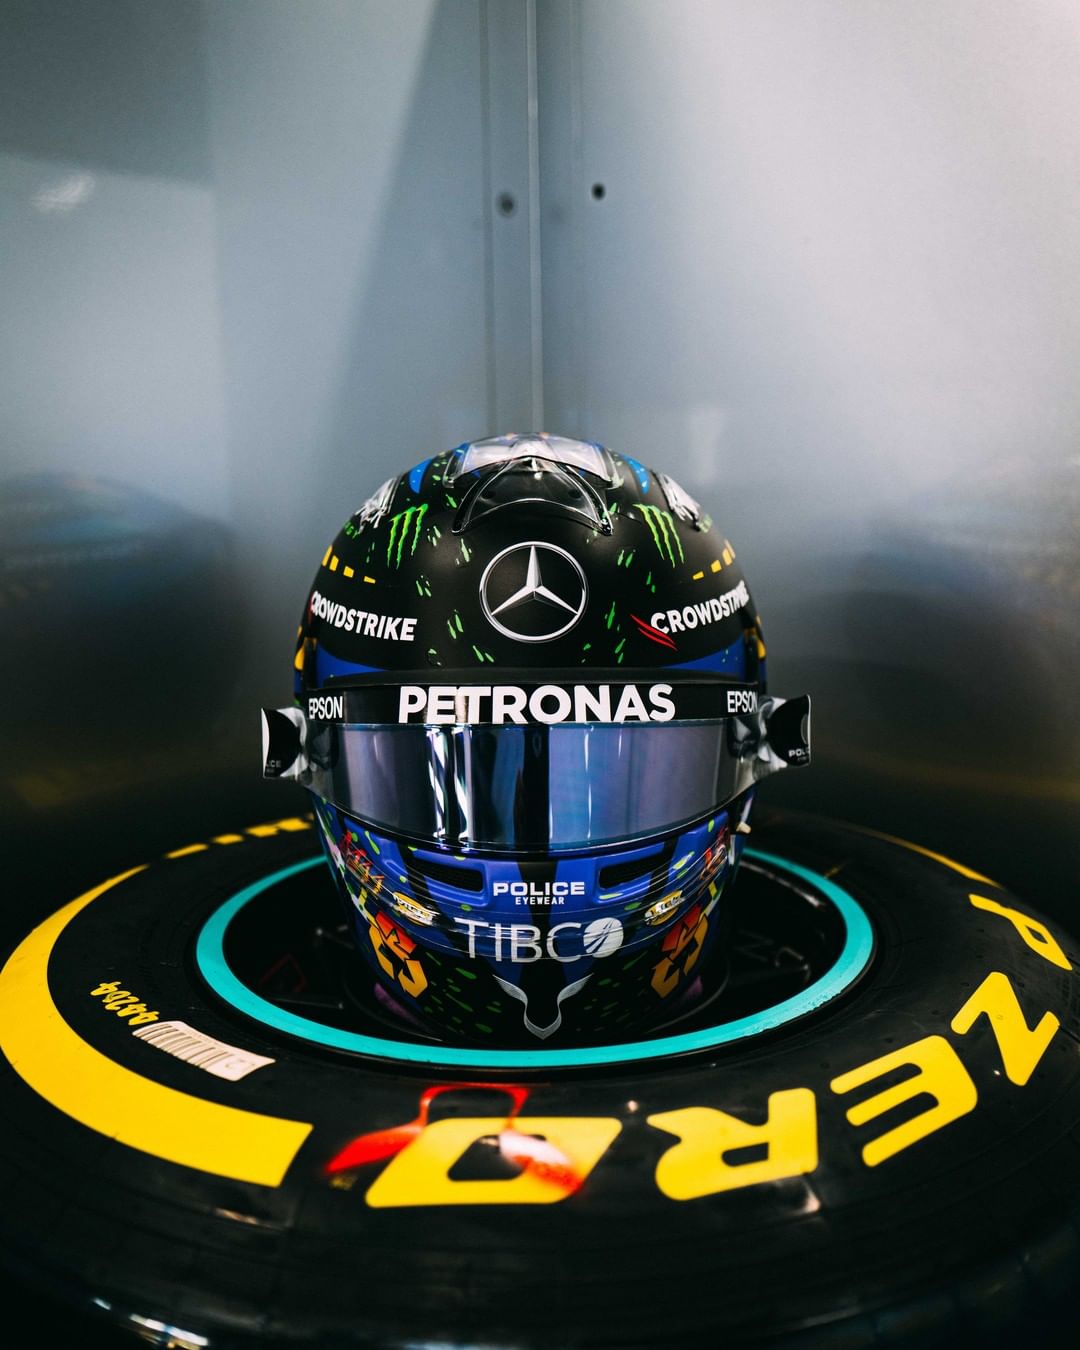 Lewis Hamilton's 2021 British Grand Prix helmet